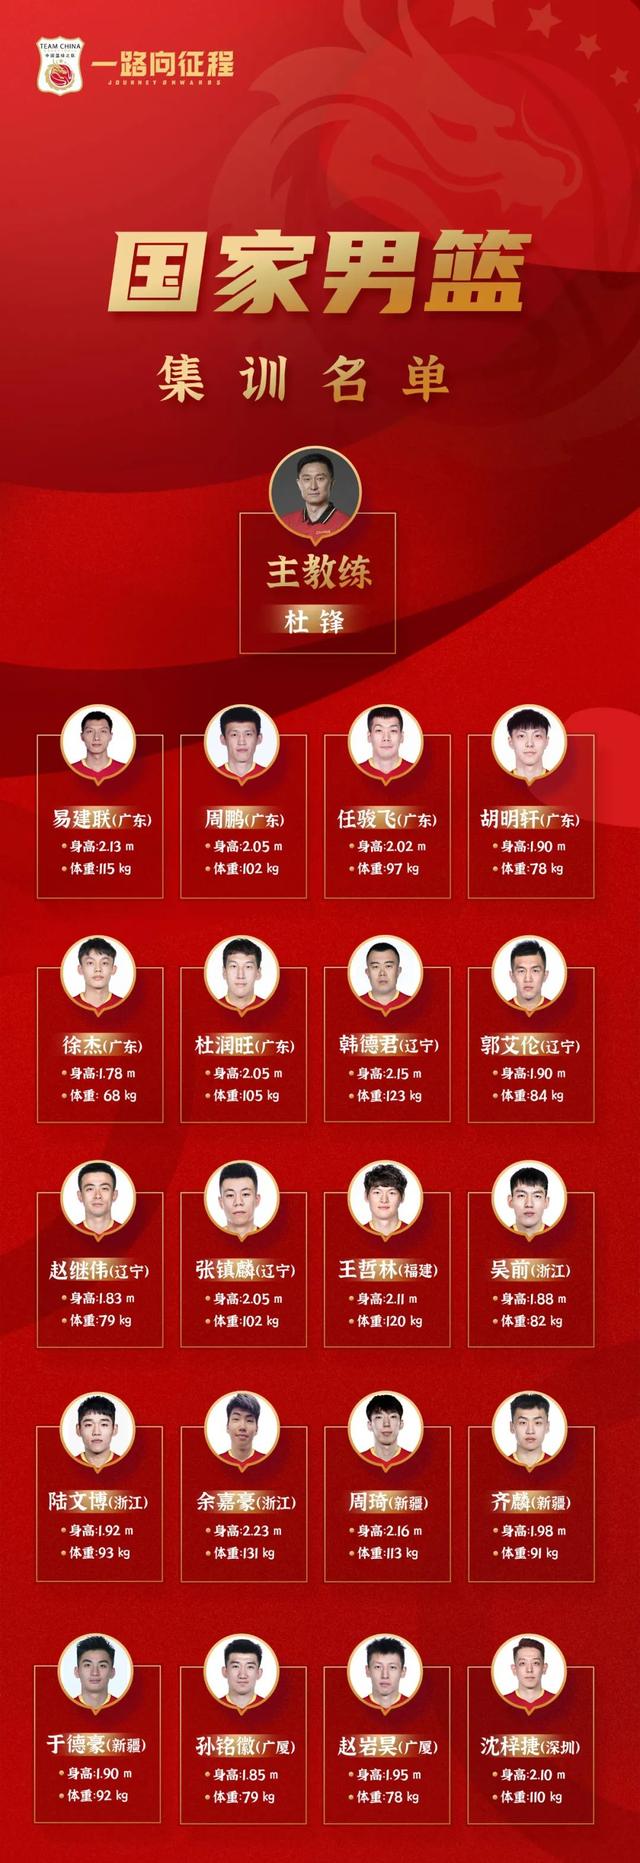 【名单】中国男篮集训名单出炉 来看看哪只CBA球队队员最多